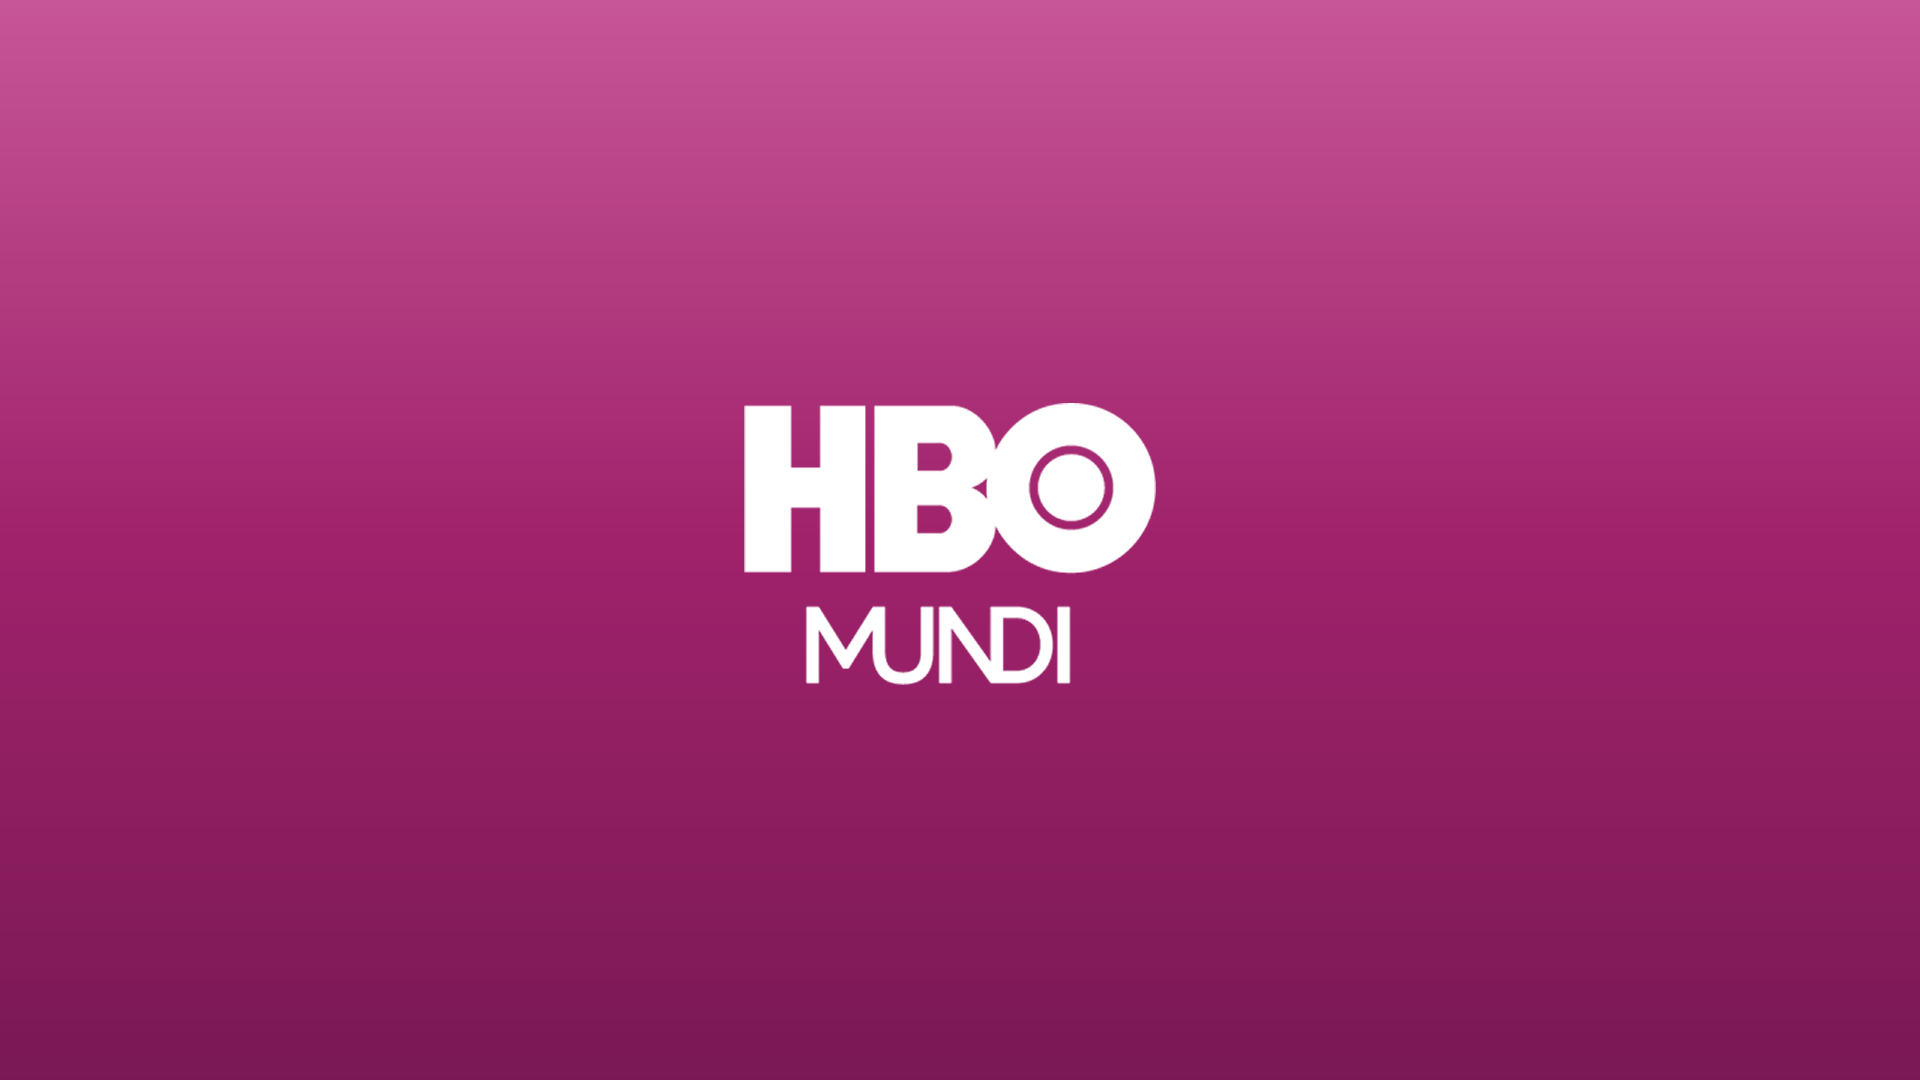 HBO Mundi Online